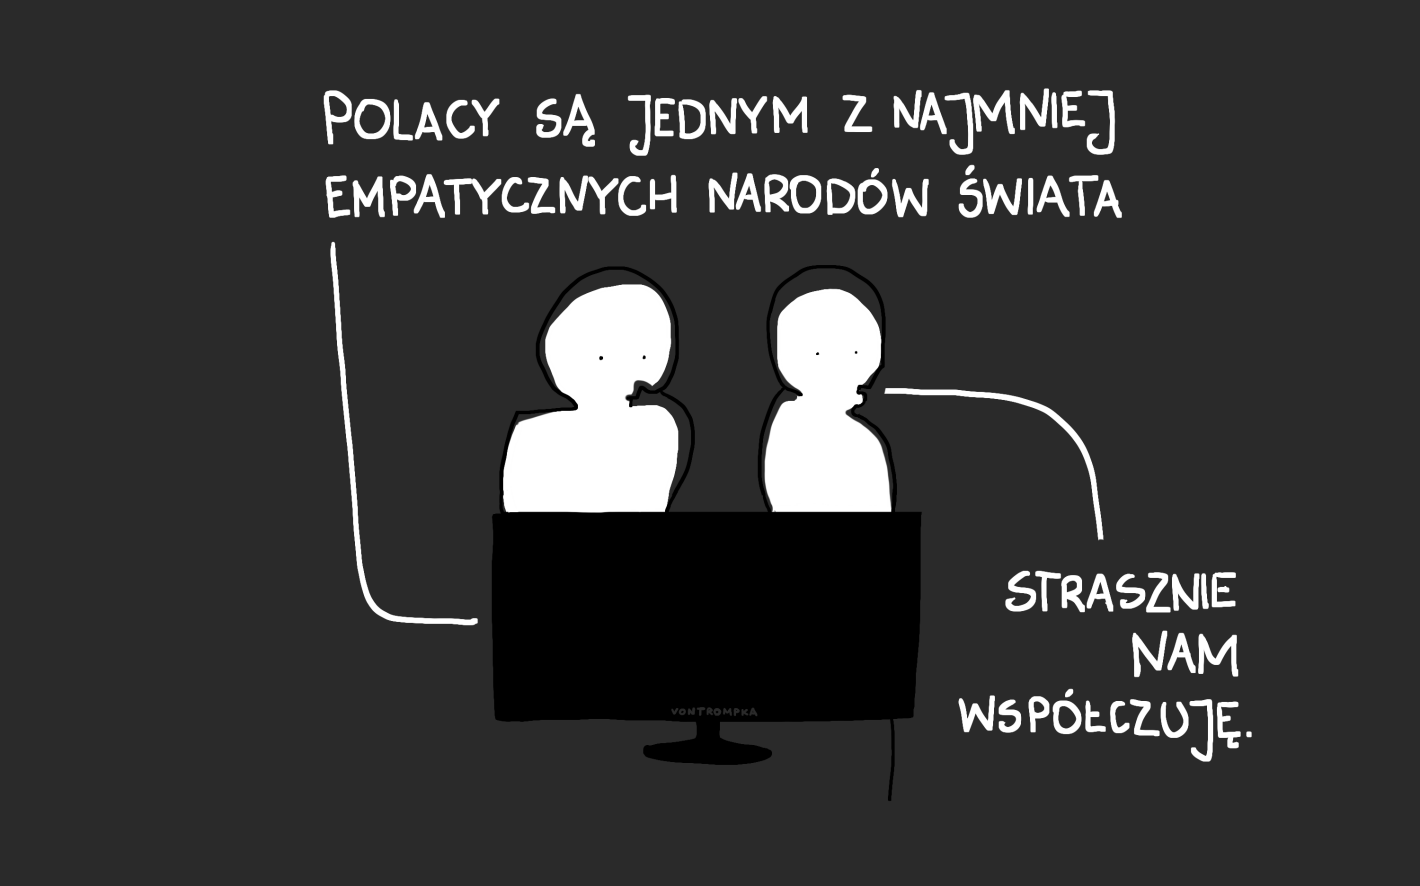 Polacy są jednym z najmniej empatycznych narodów świata. strasznie nam współczuję.